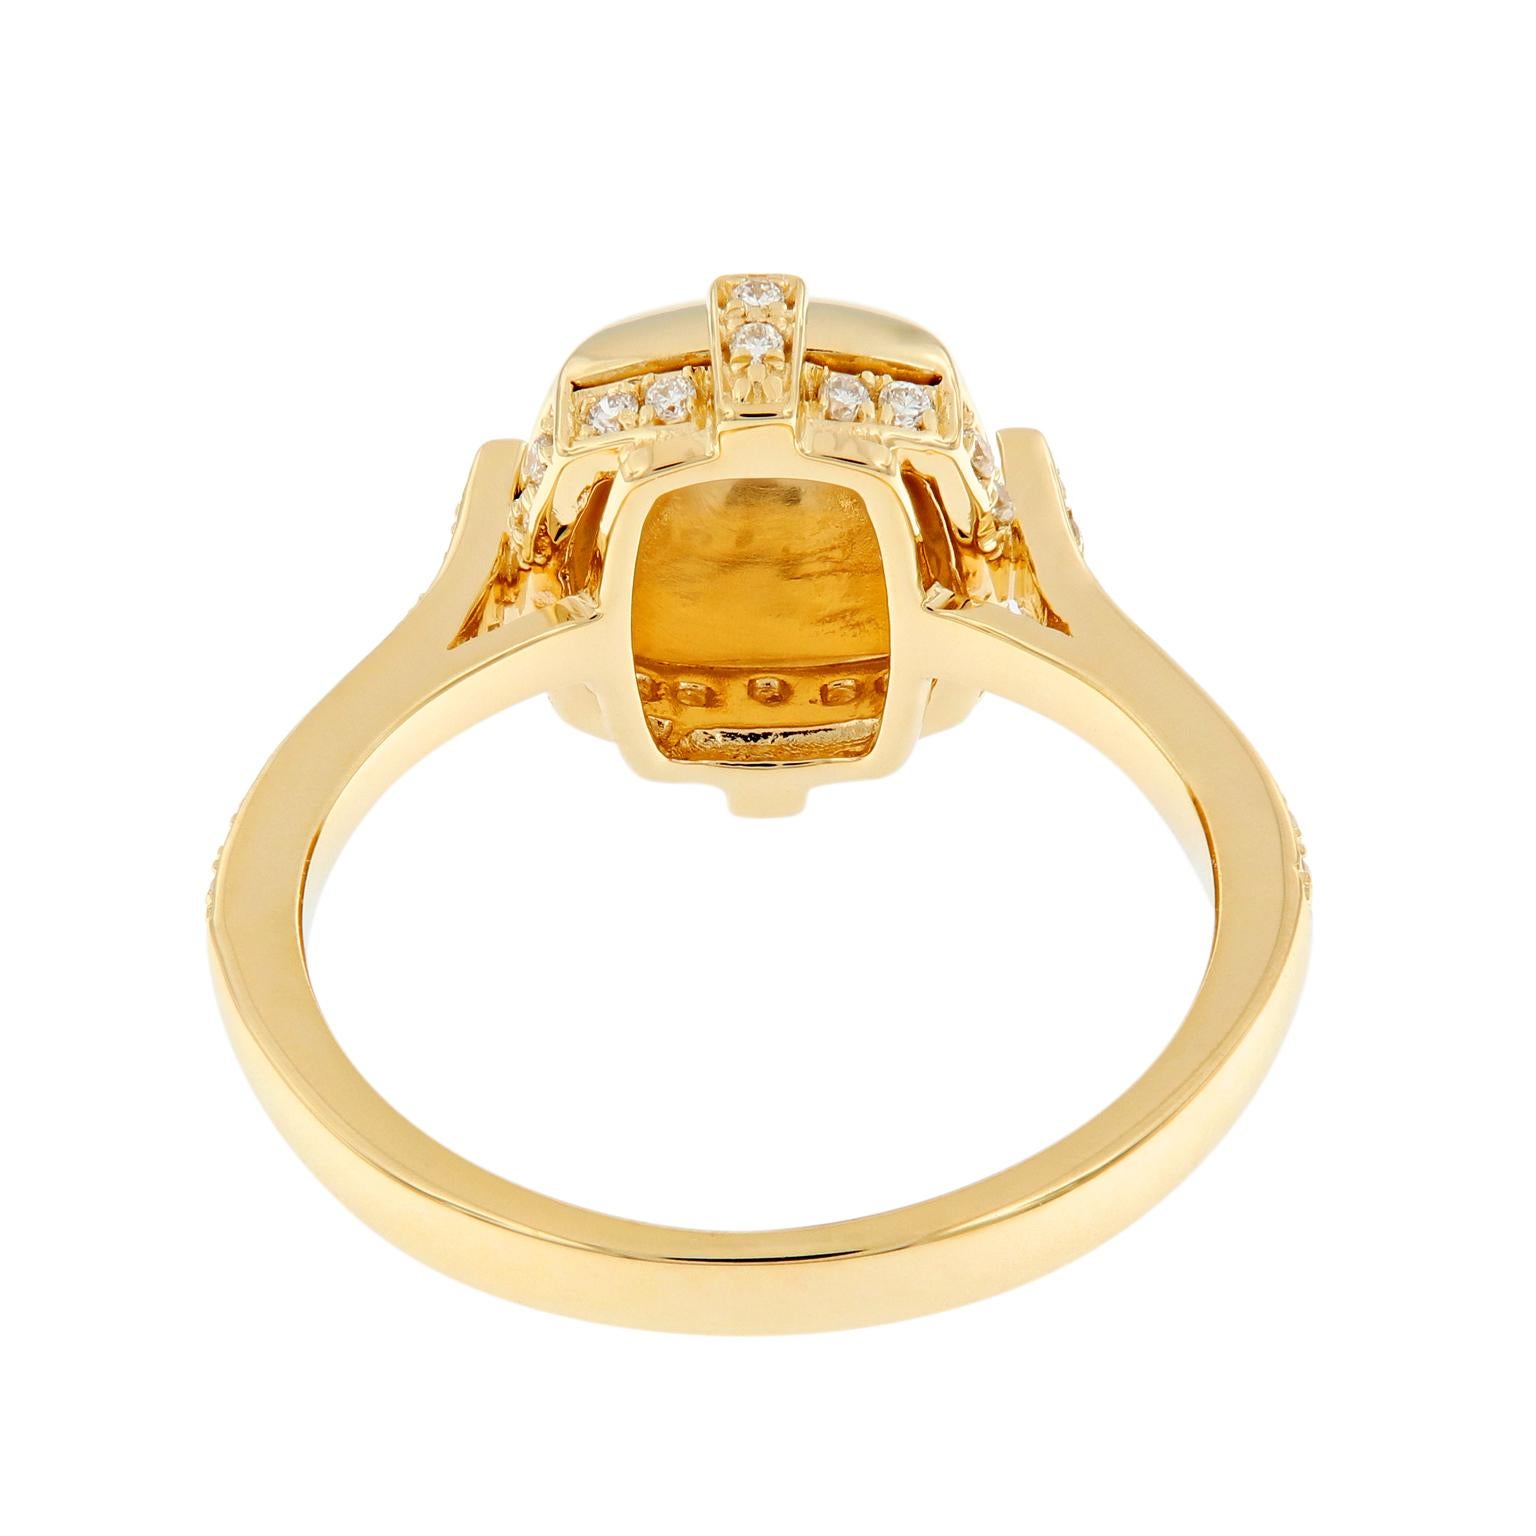 Contemporary 18 Karat Yellow Gold Surgarloaf Pave Diamond Ring by Goshwara For Sale